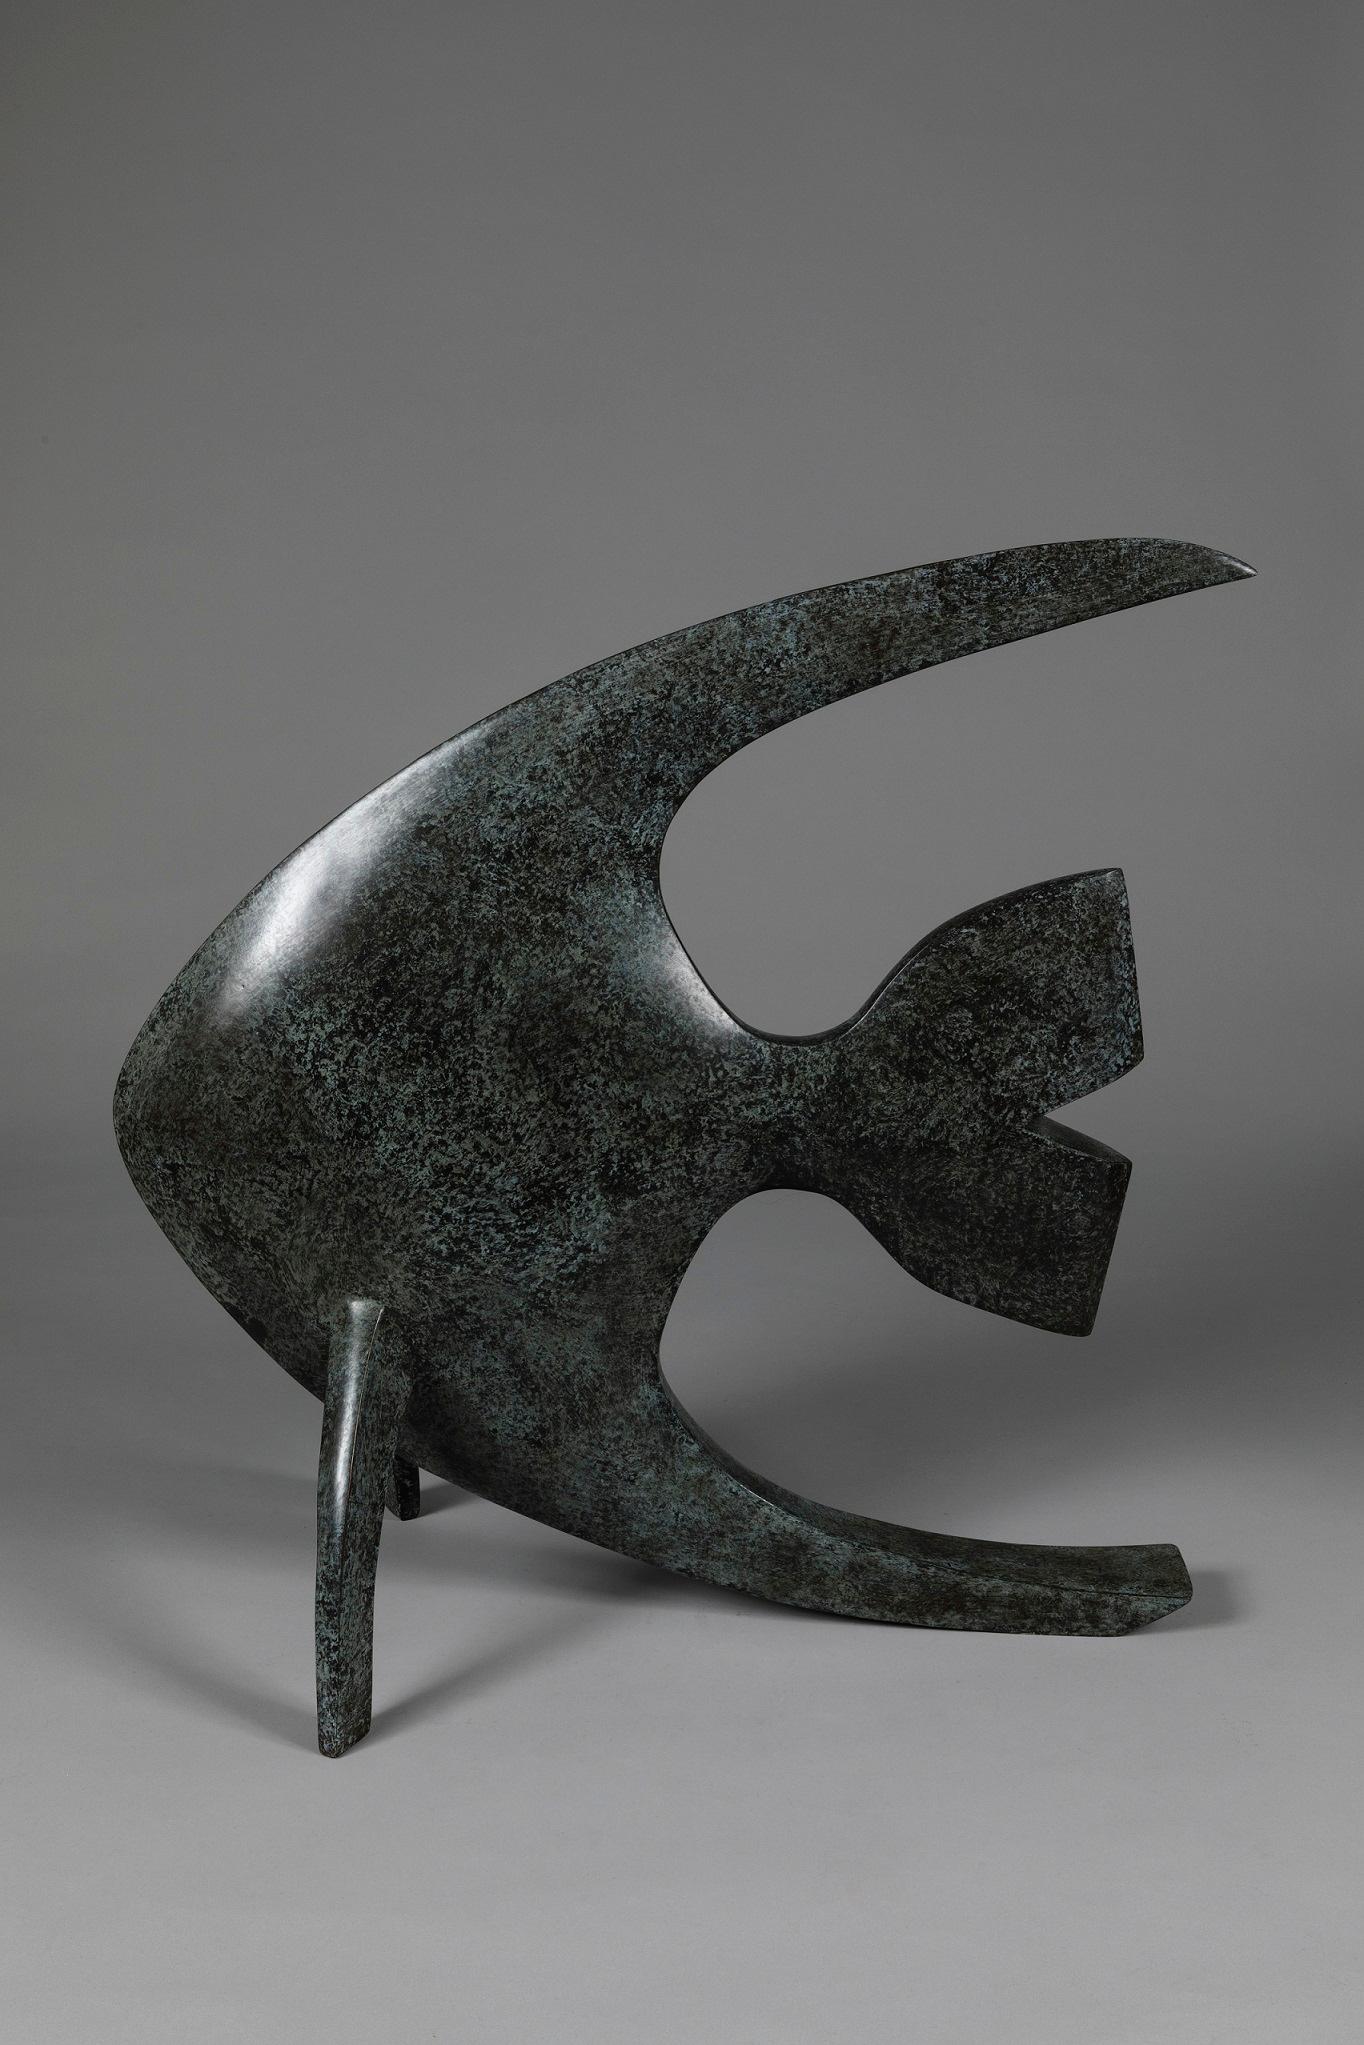 Acqua est une sculpture en bronze d'un poisson de Marie Louise Sorbac. 63 cm × 32 cm × 63 cm.

Cette sculpture fait partie d'une série célébrant la nature et le règne animal. Il est disponible en édition limitée à 8 exemplaires et 4 épreuves